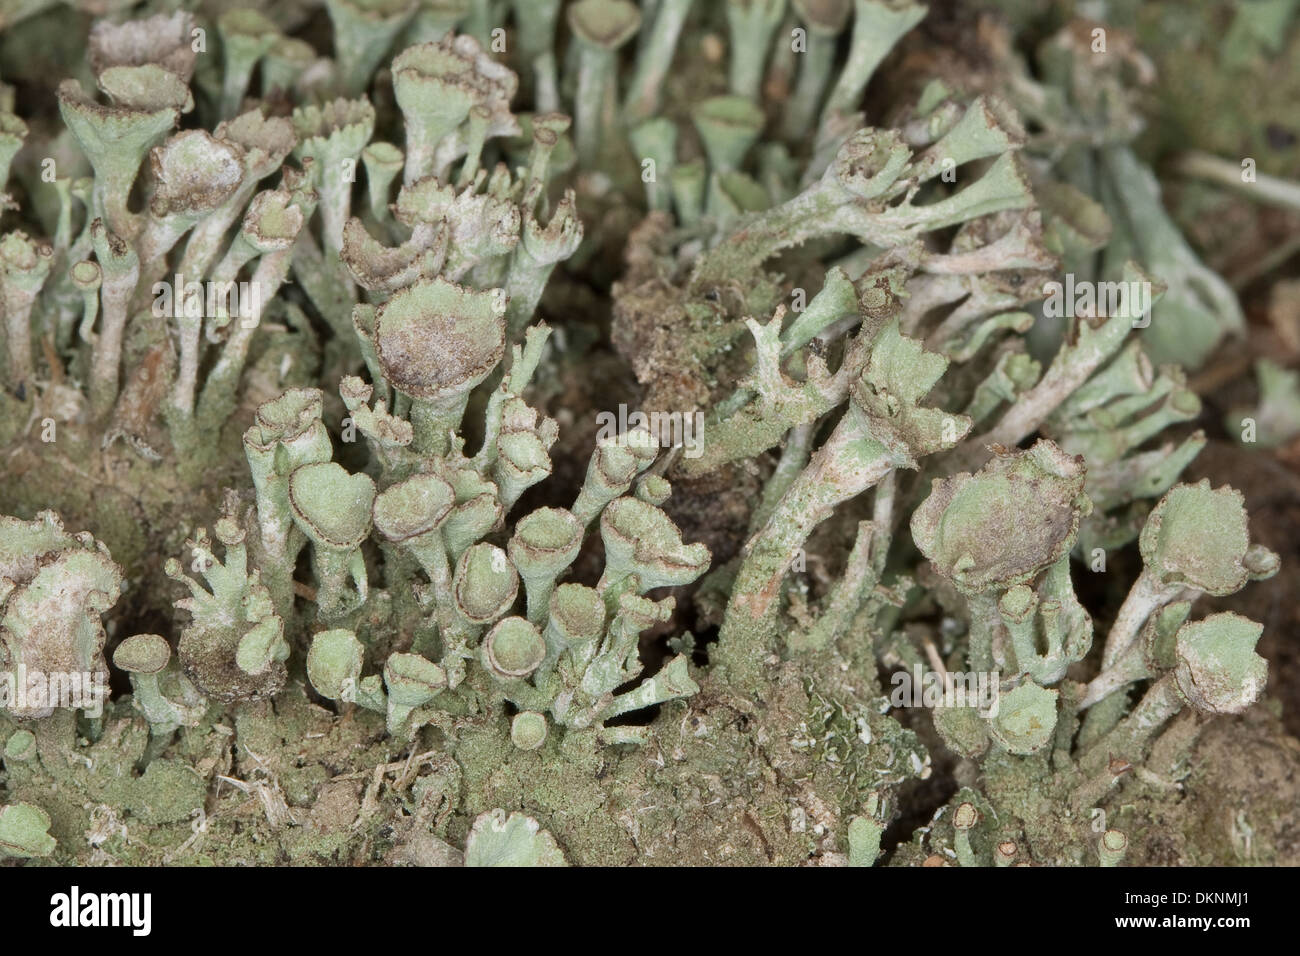 Cup Lichen, Echte Becherflechte auf einem alten Zaunpfahl, Totholz, Cladonia pyxidata s.l. Stock Photo